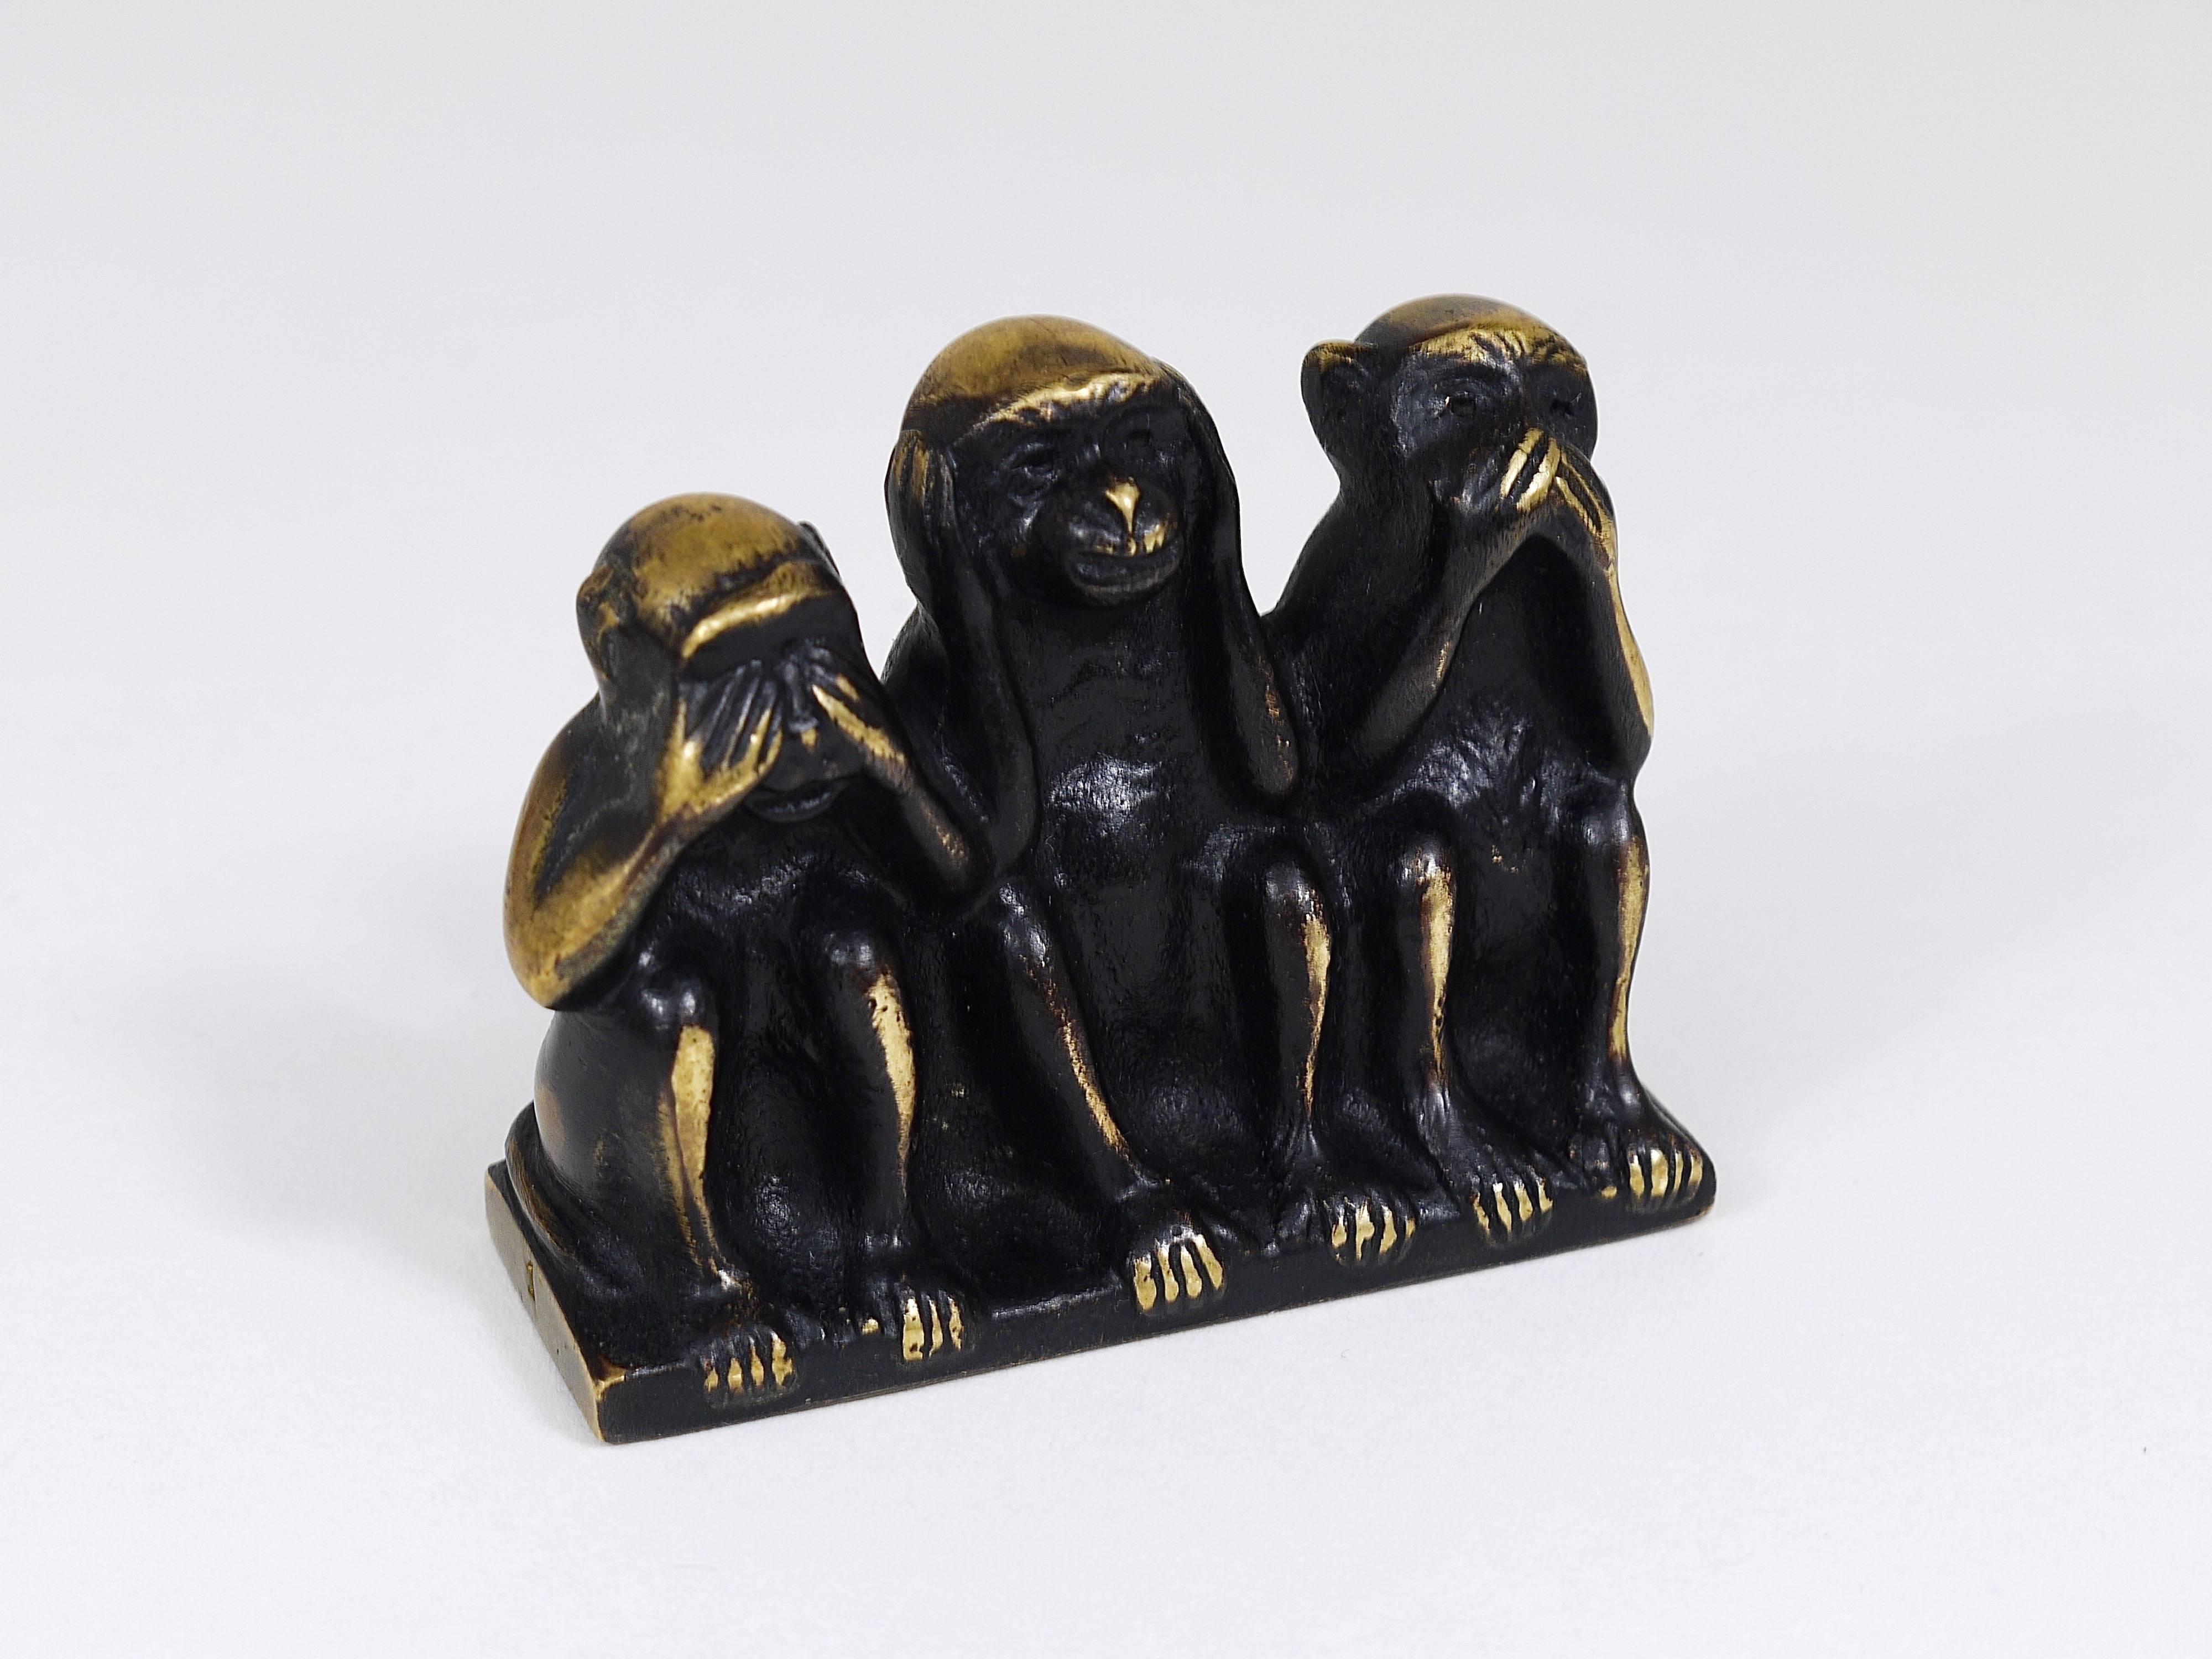 Austrian Walter Bosse Three Wise Monkeys Brass Figurine, Hertha Baller, Austria, 1950s